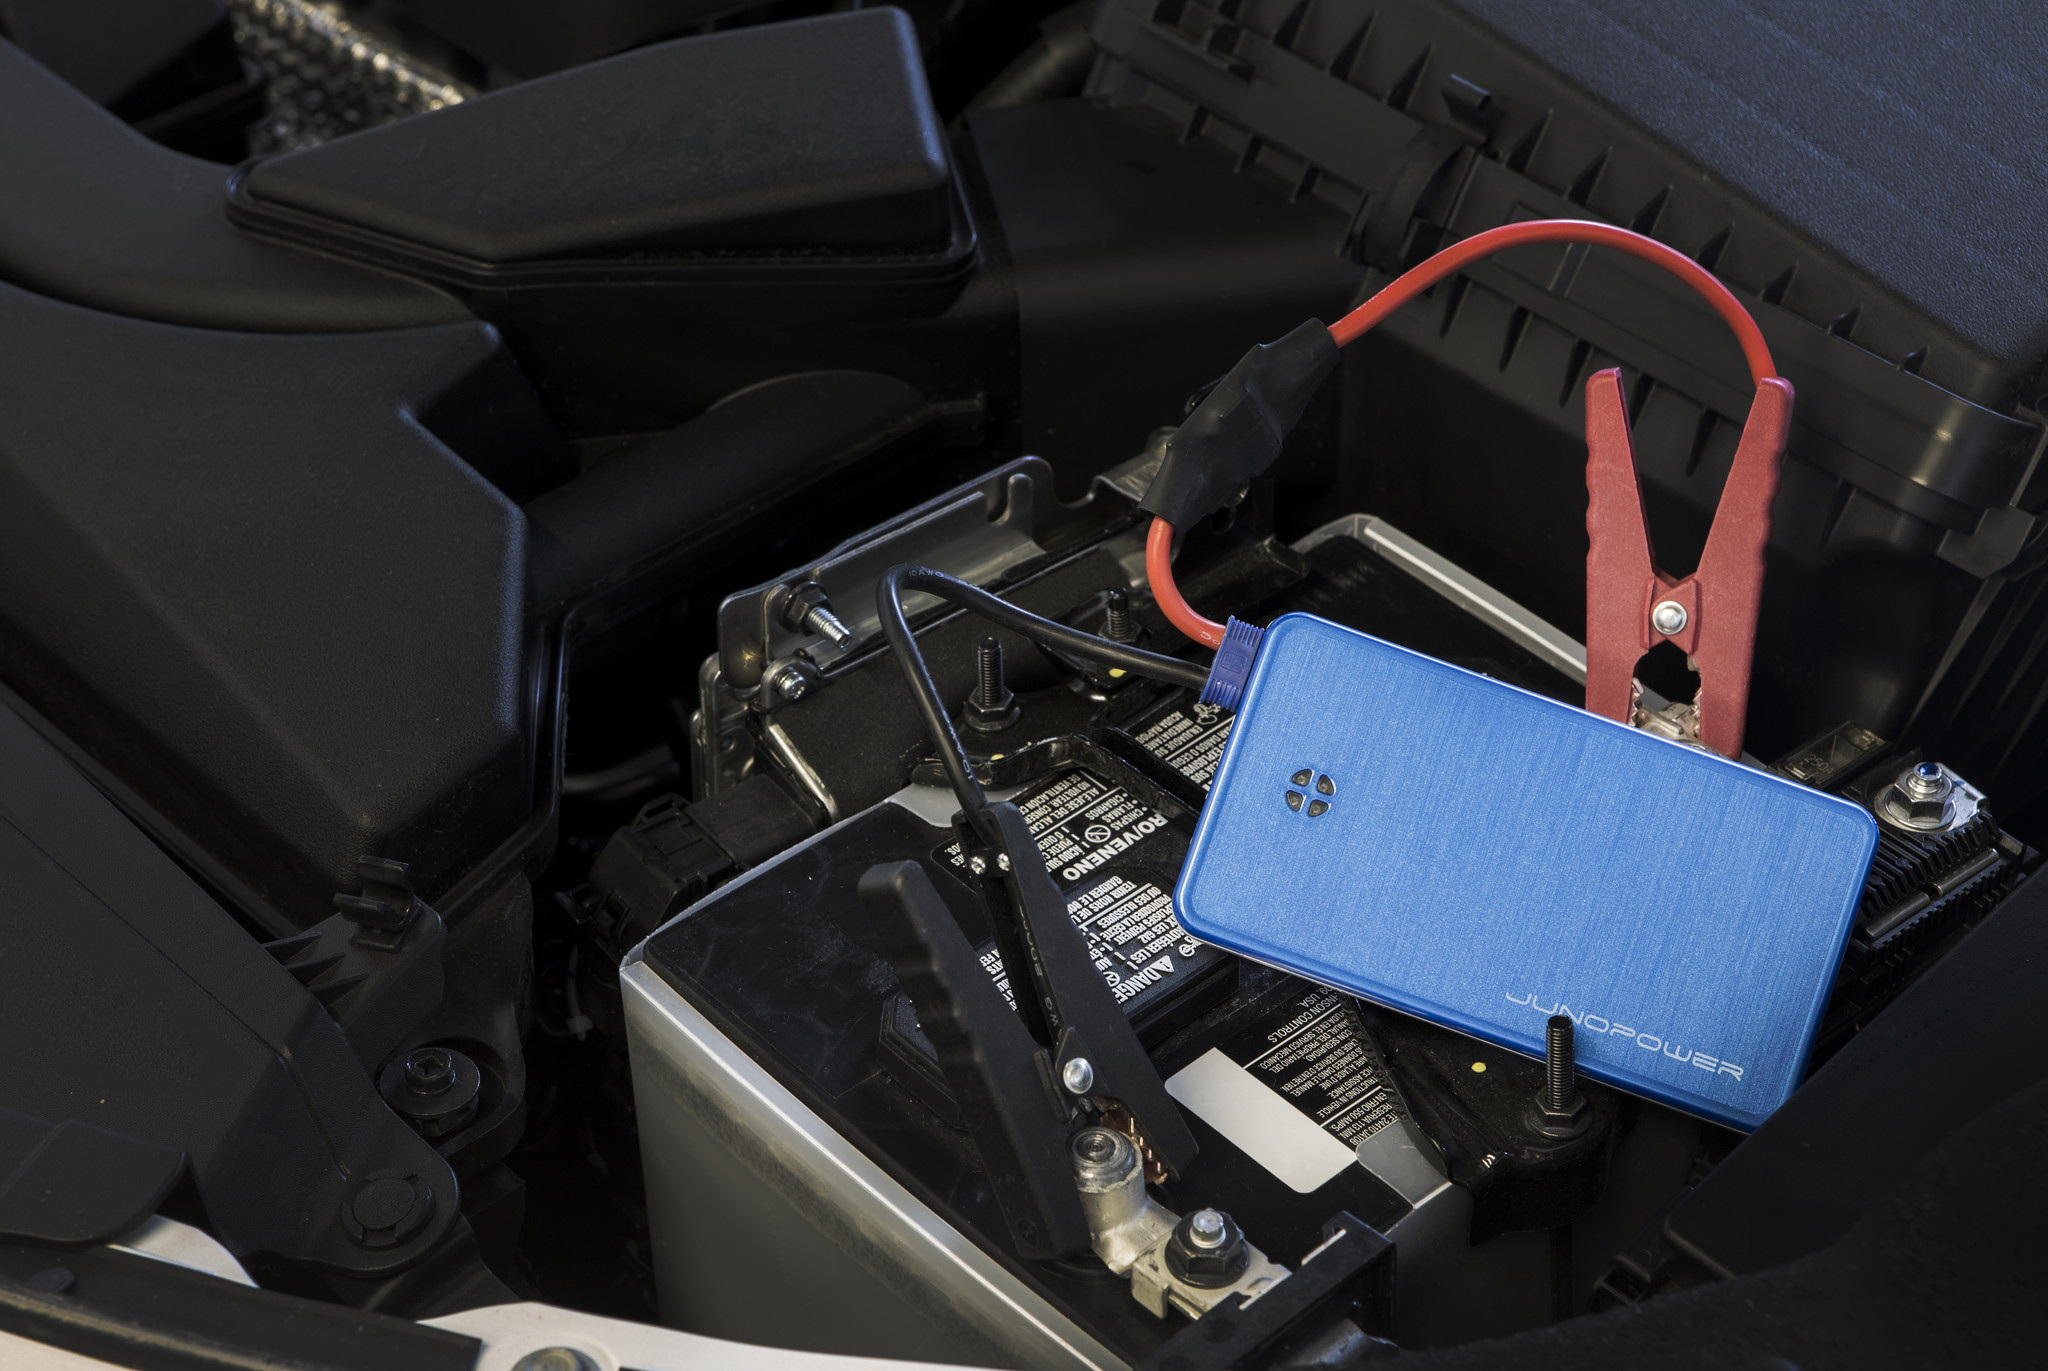 Аккумулятор пусковой - Car Jump Starter (автономное мини пусковое  устройство для автомобильного аккумулятора - аварийная пусковая батарея  Power Bank, пуско-зарядное устройство) | Обзор товаров, прикольные и  необычные товары, вещи, штуки, гаджеты и подарки